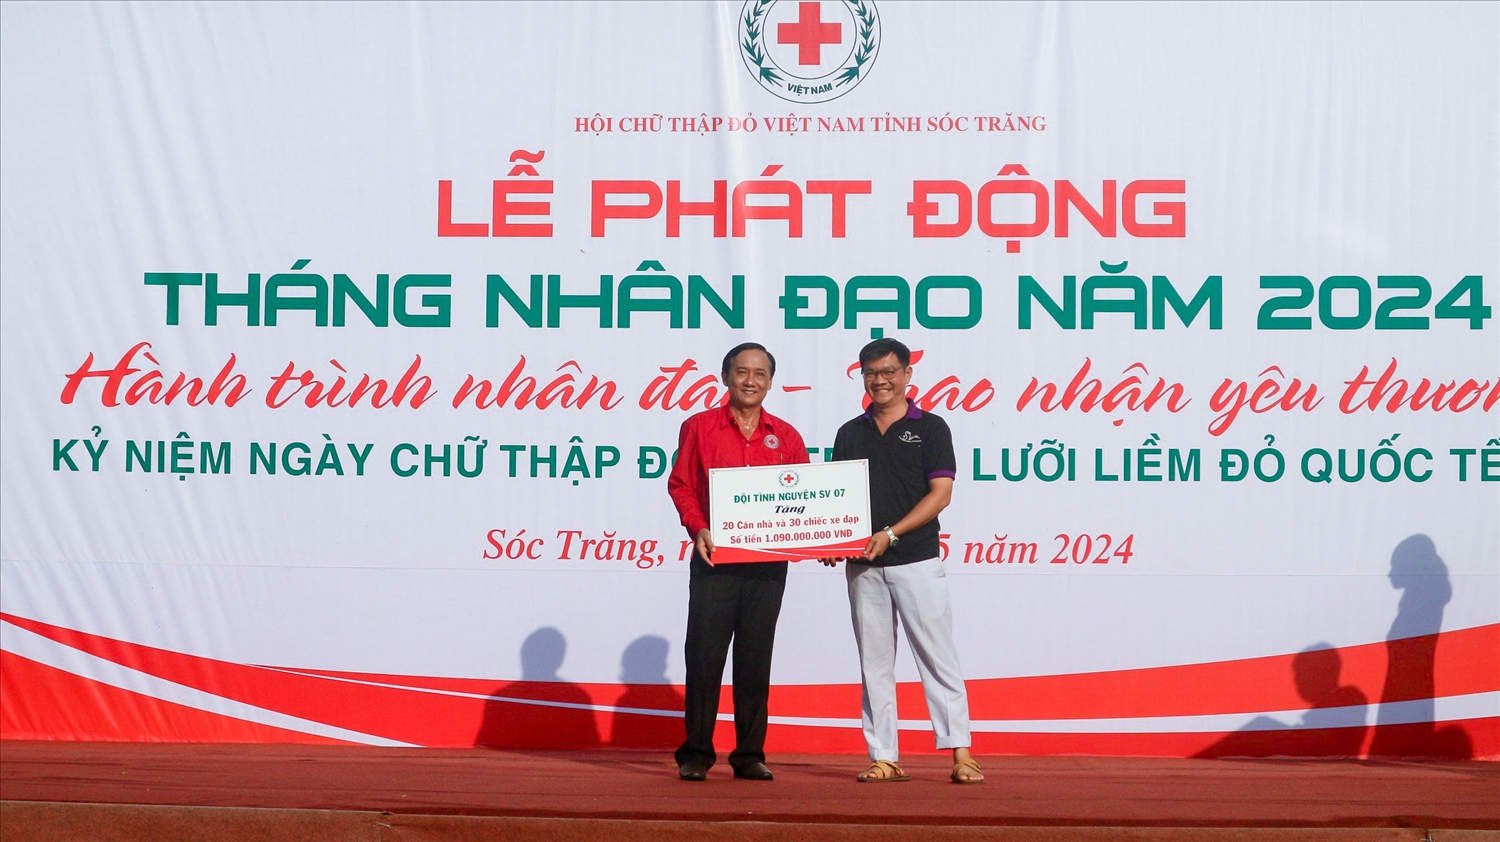 Đại diện nhà tài trợ trao bảng tượng trưng ủng hộ Tháng nhân đạo năm 2024 đến lãnh đạo Hội Chữ thập đỏ Việt Nam tỉnh Sóc Trăng 